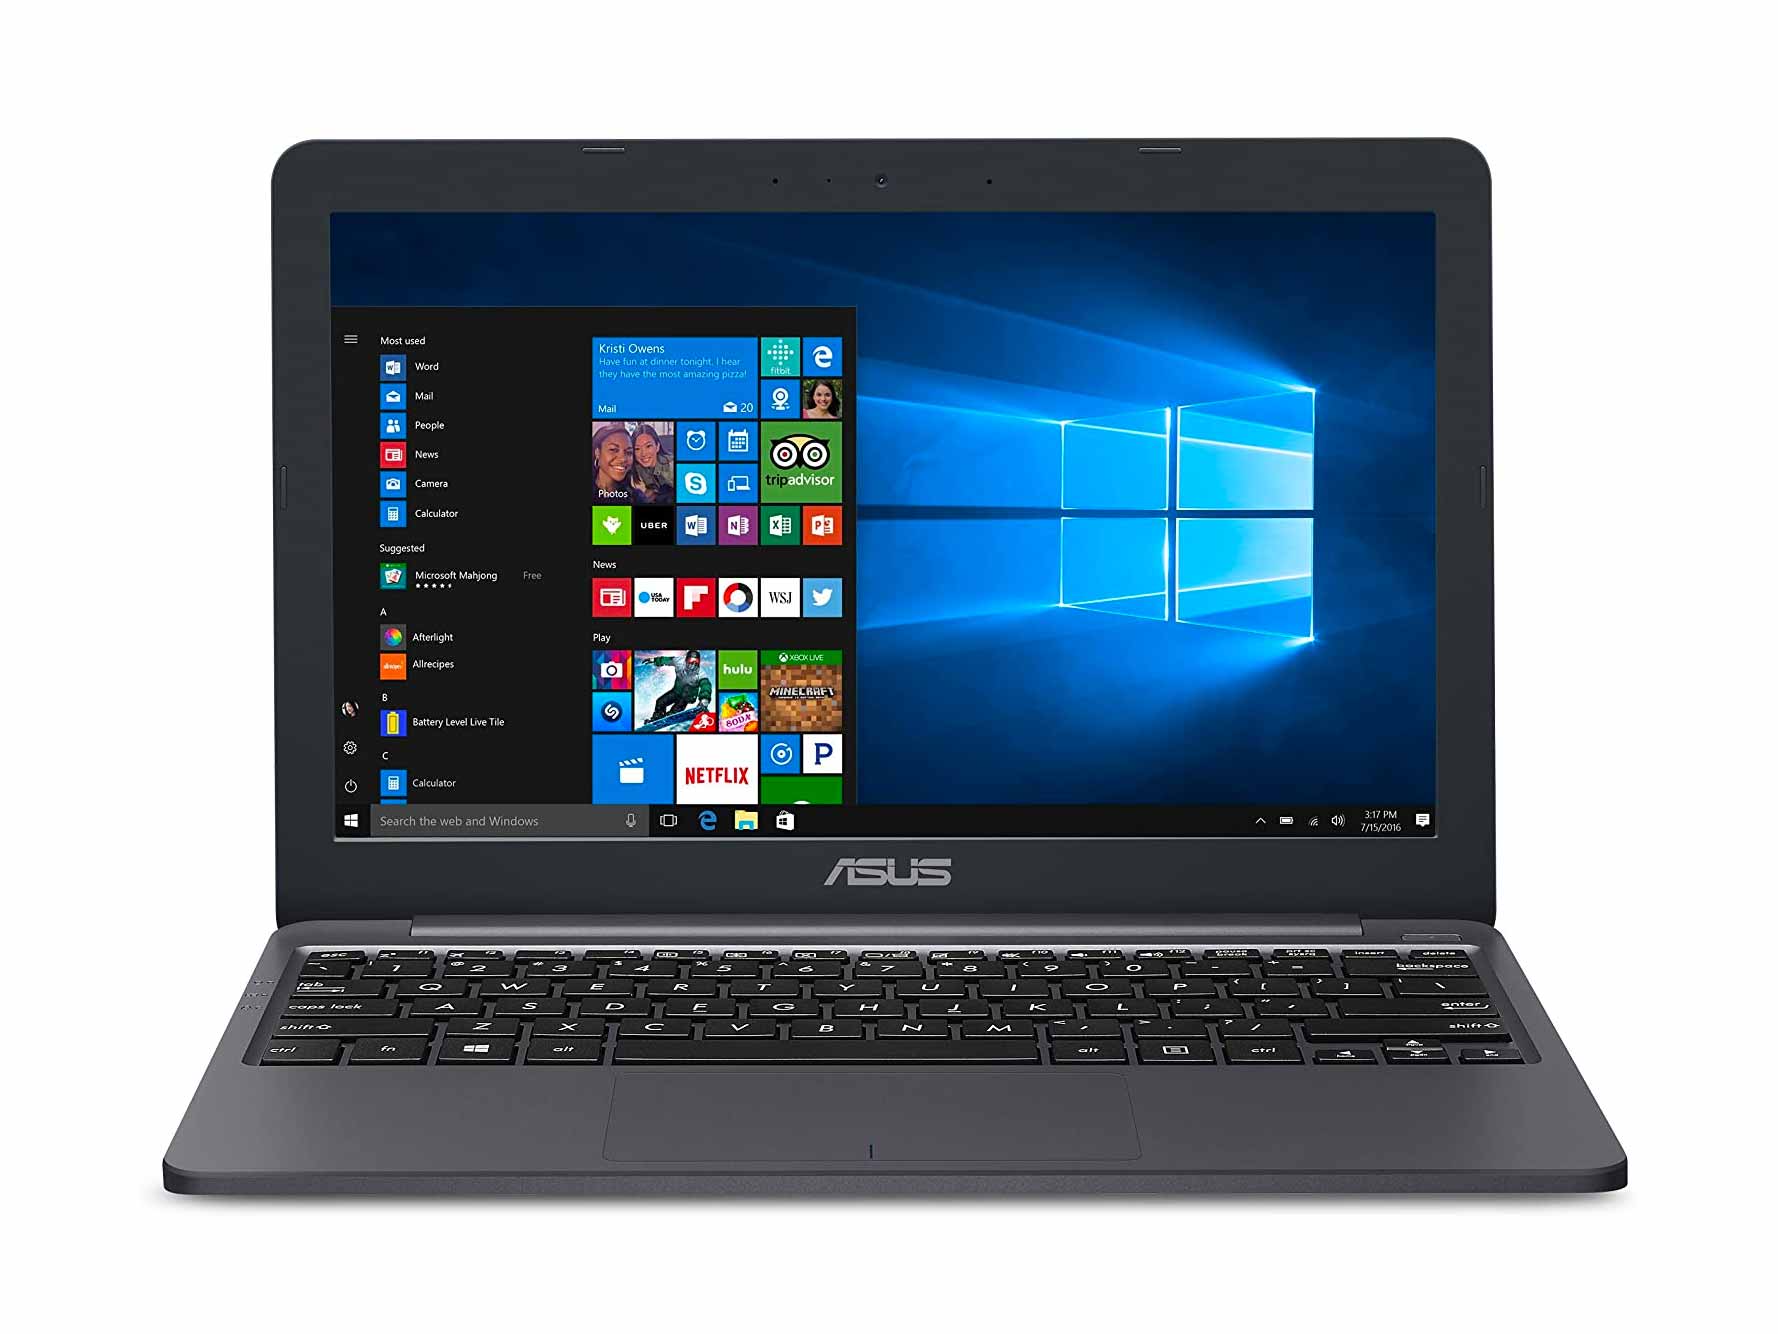 ASUS L203MA-DS04 VivoBook L203MA Laptop, 11.6